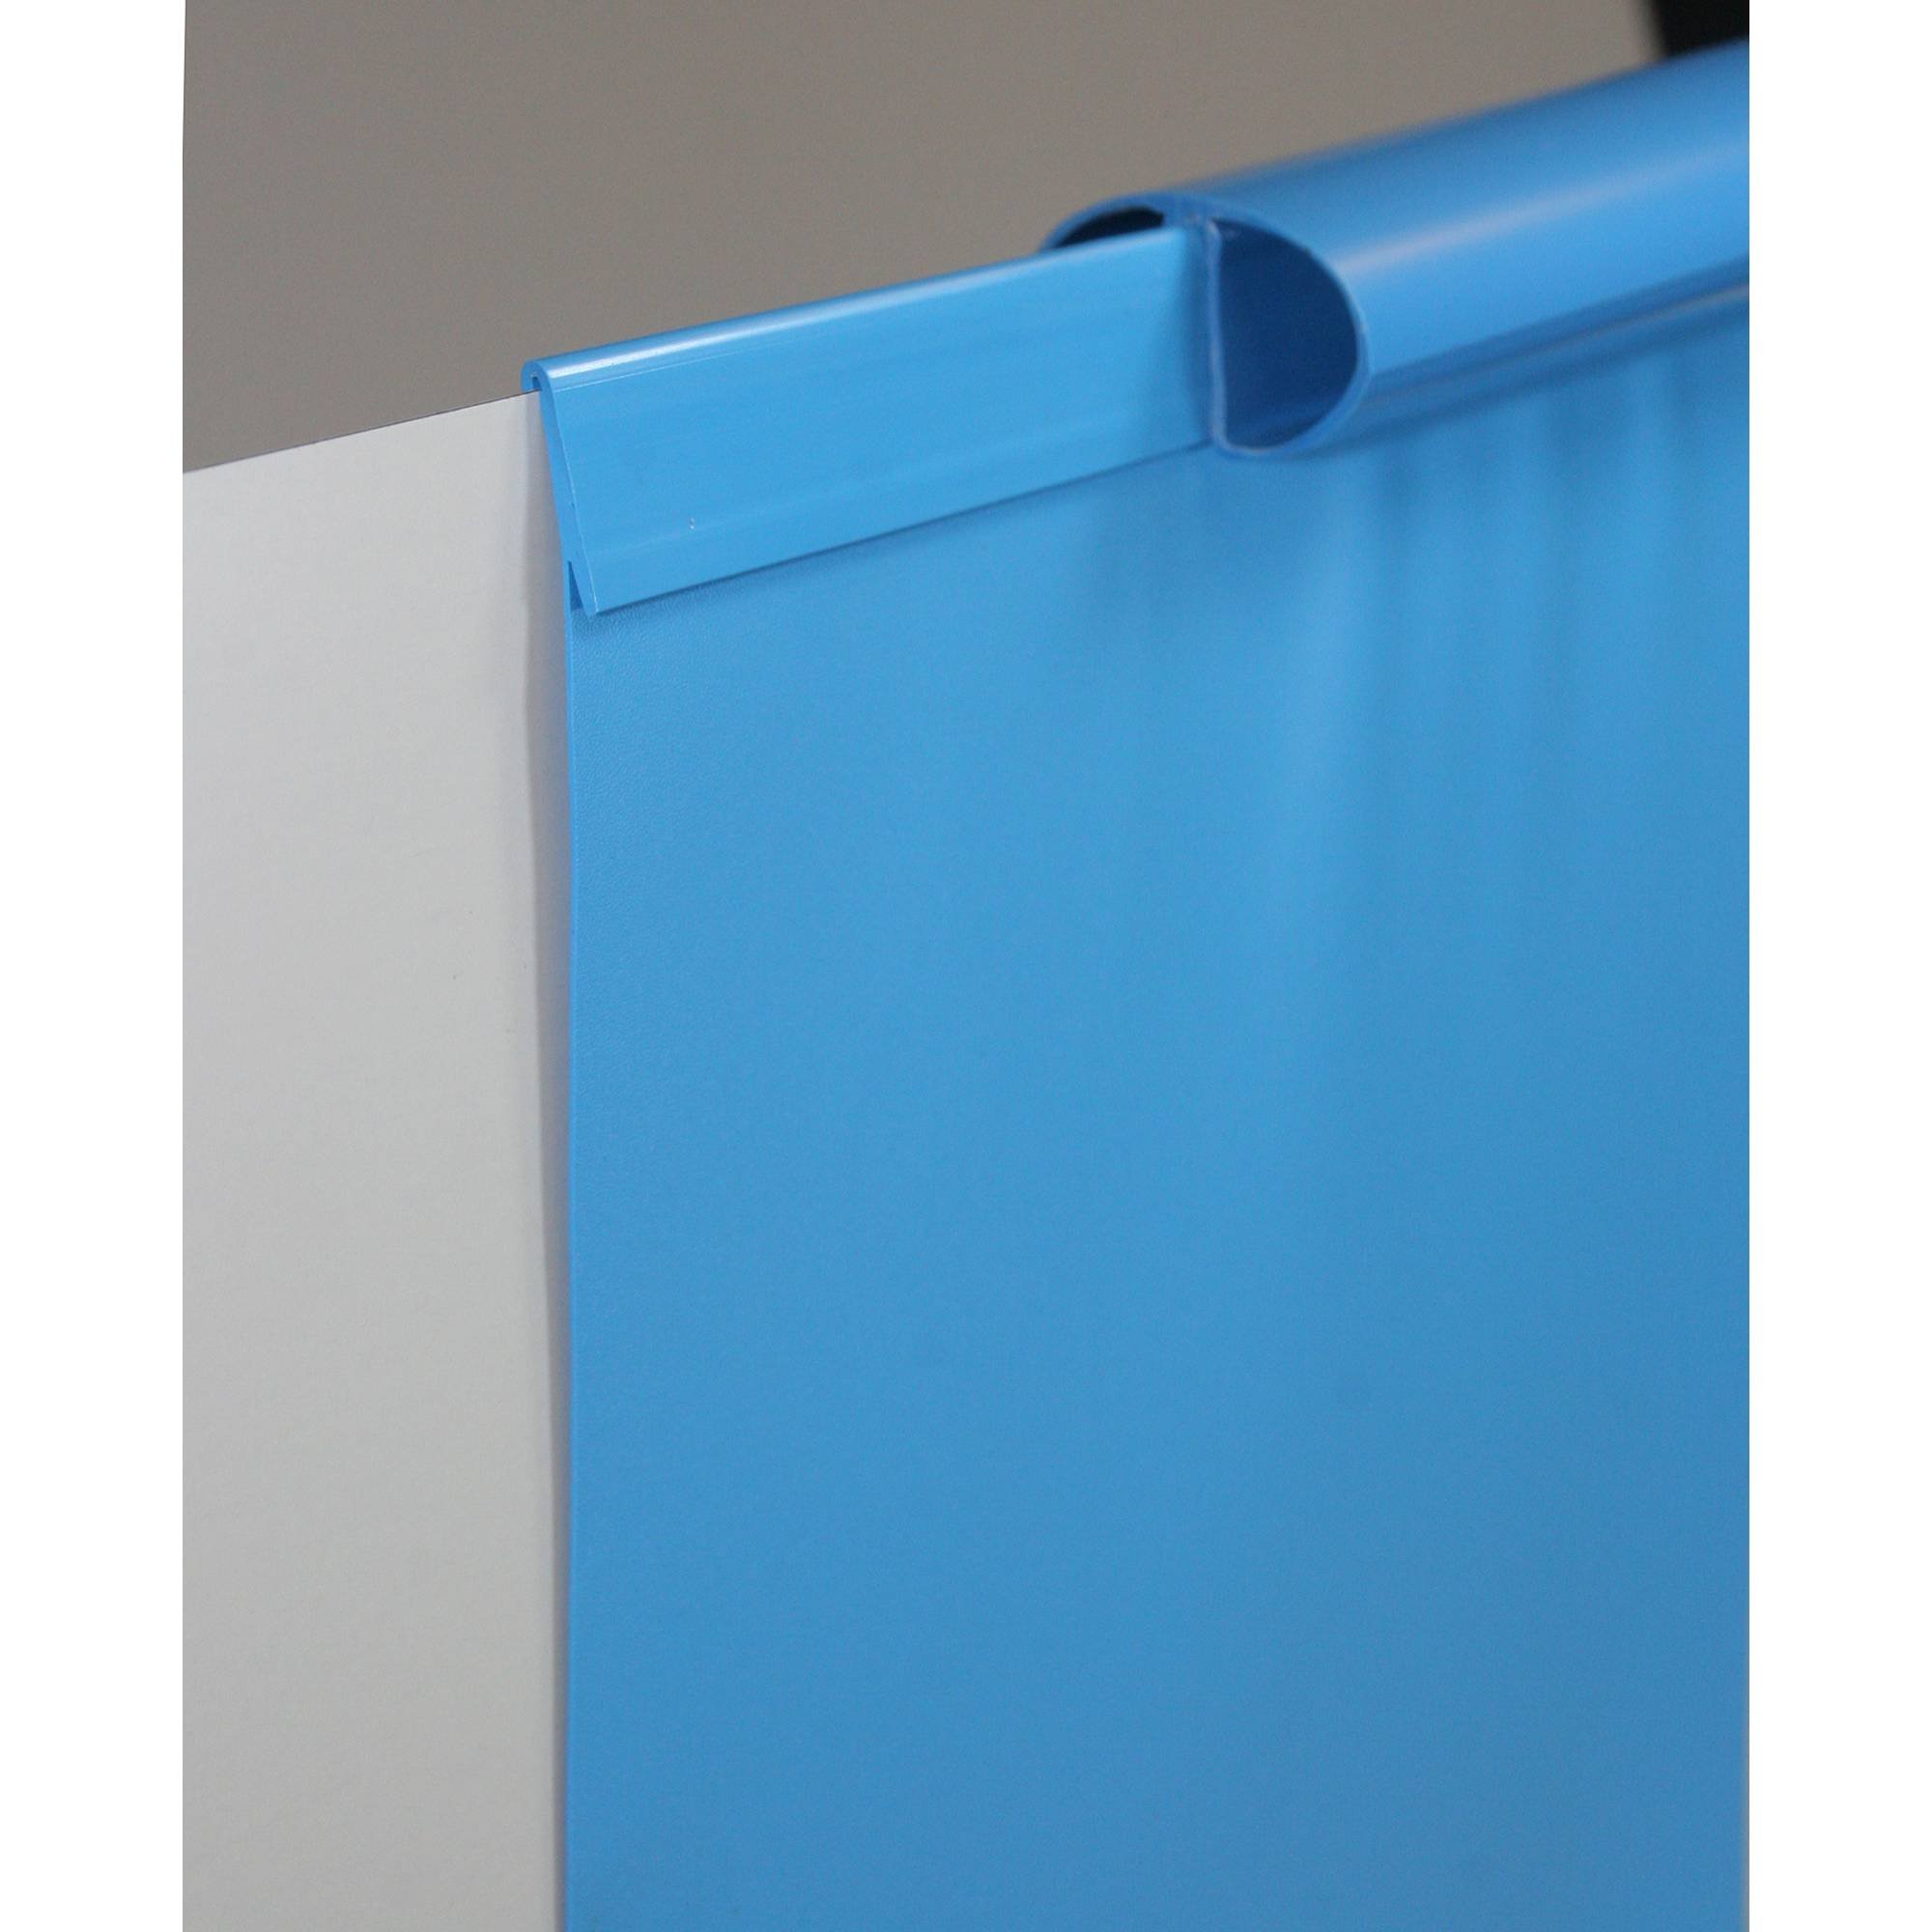 Poolfolie Ersatzfolie Ovalbecken 700x300x120cm - Dicke 0,6mm - Einhängebiese - blau